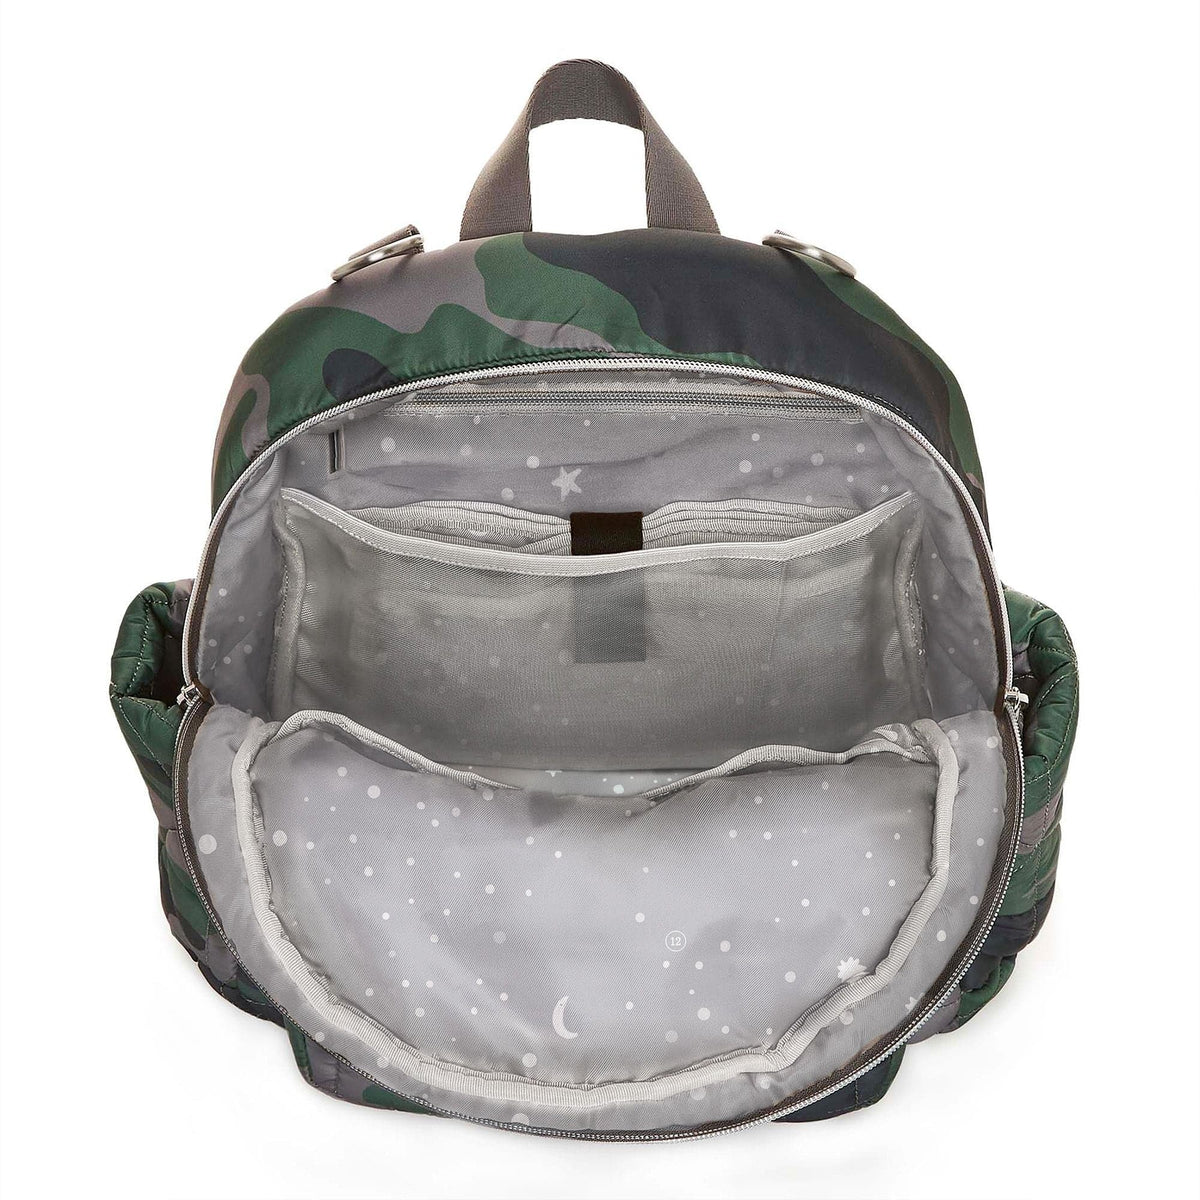 TWELVElittle Little Companion Diaper Bag Backpack